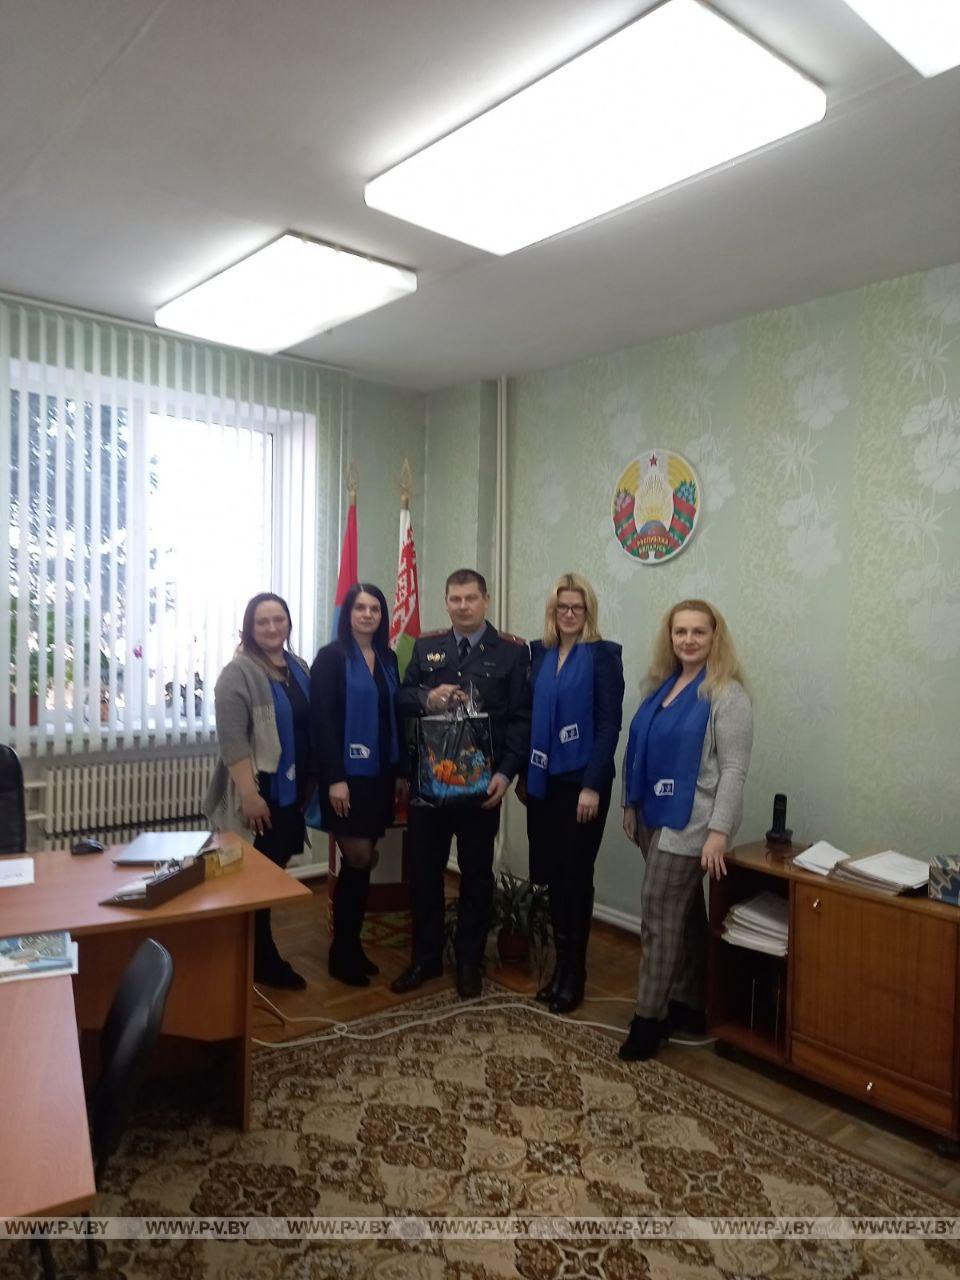 Поздравления от первички ОО "Белорусский союз женщин" райисполкома принимали стражи правопорядка